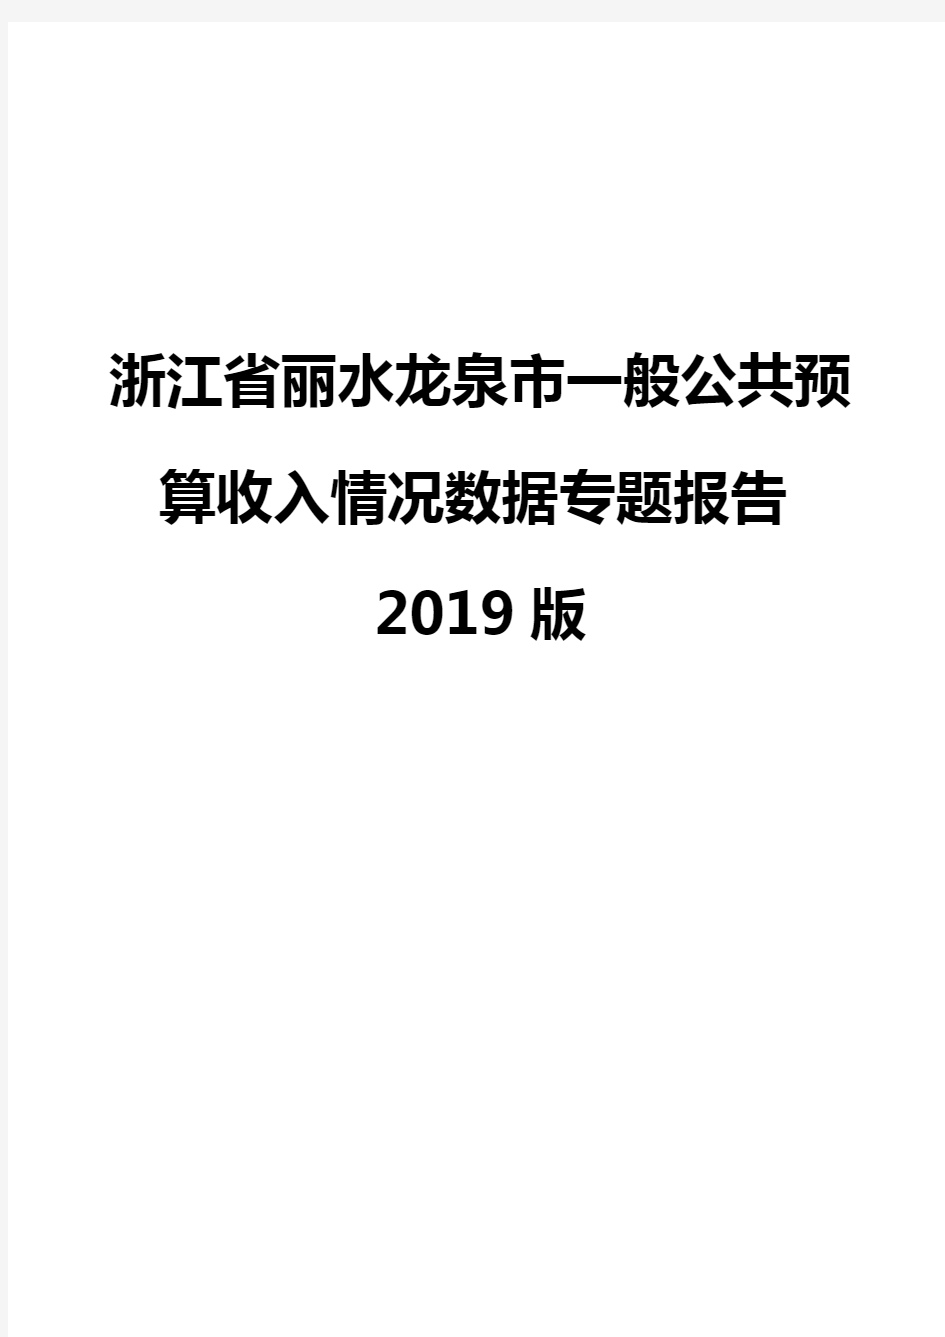 浙江省丽水龙泉市一般公共预算收入情况数据专题报告2019版